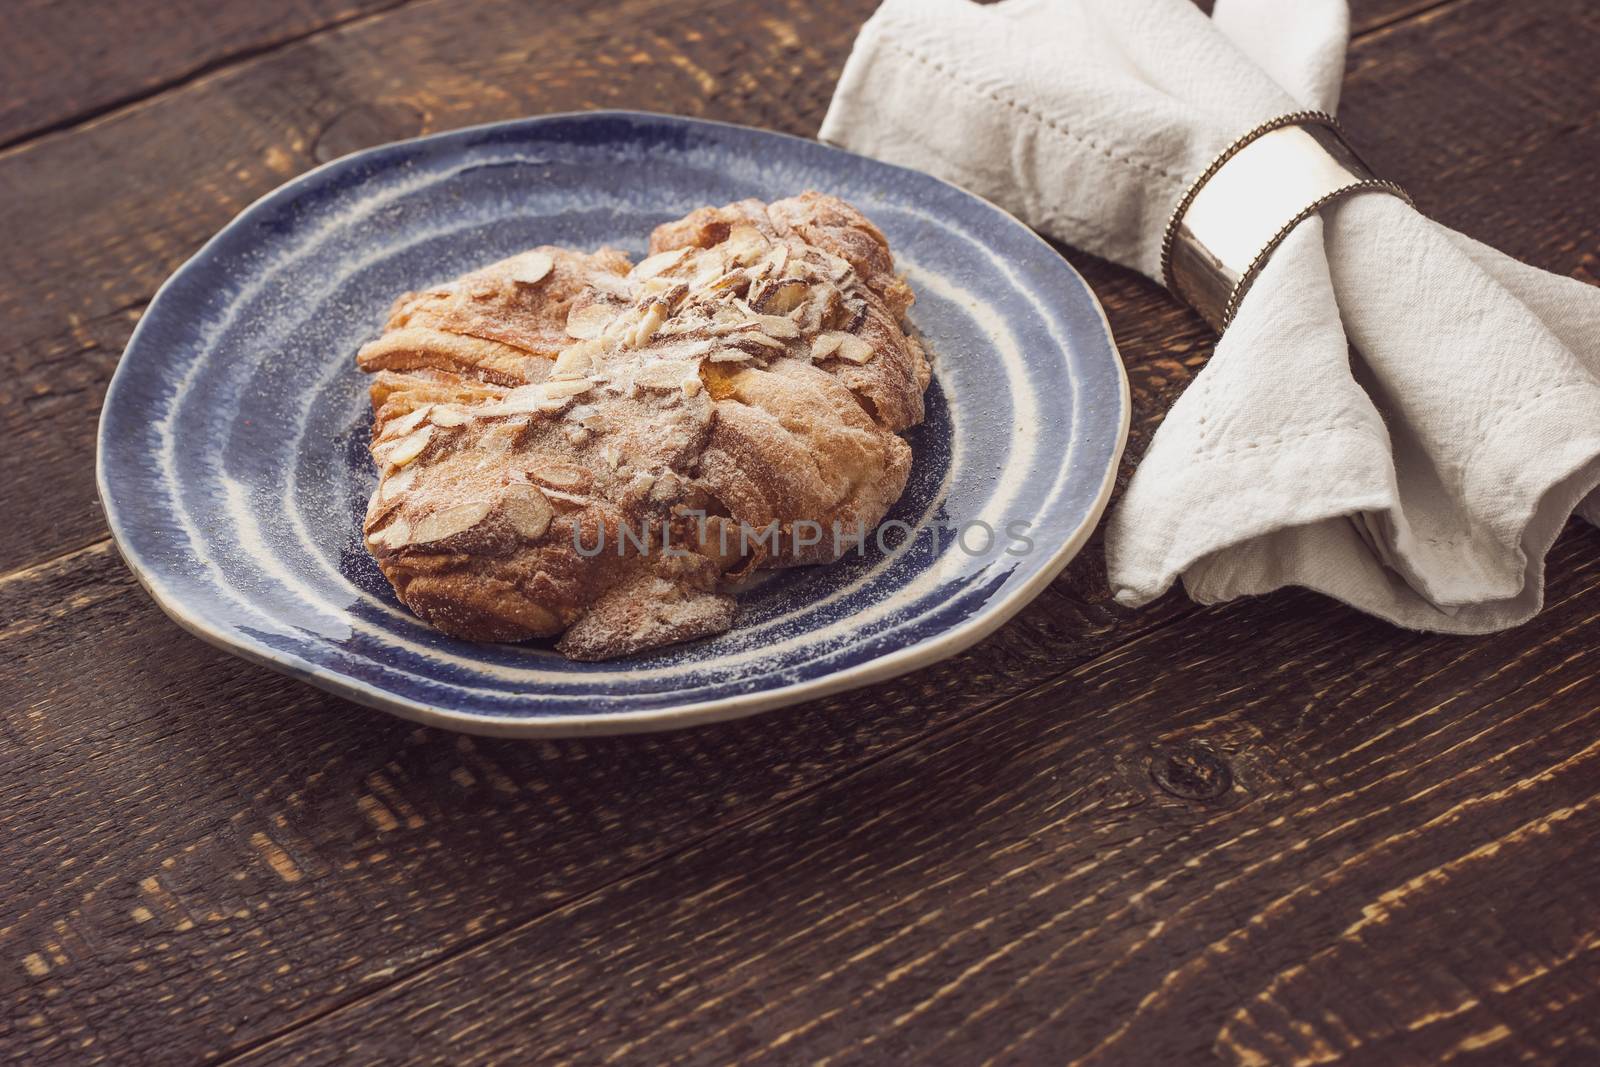 Croissant with almond by Deniskarpenkov